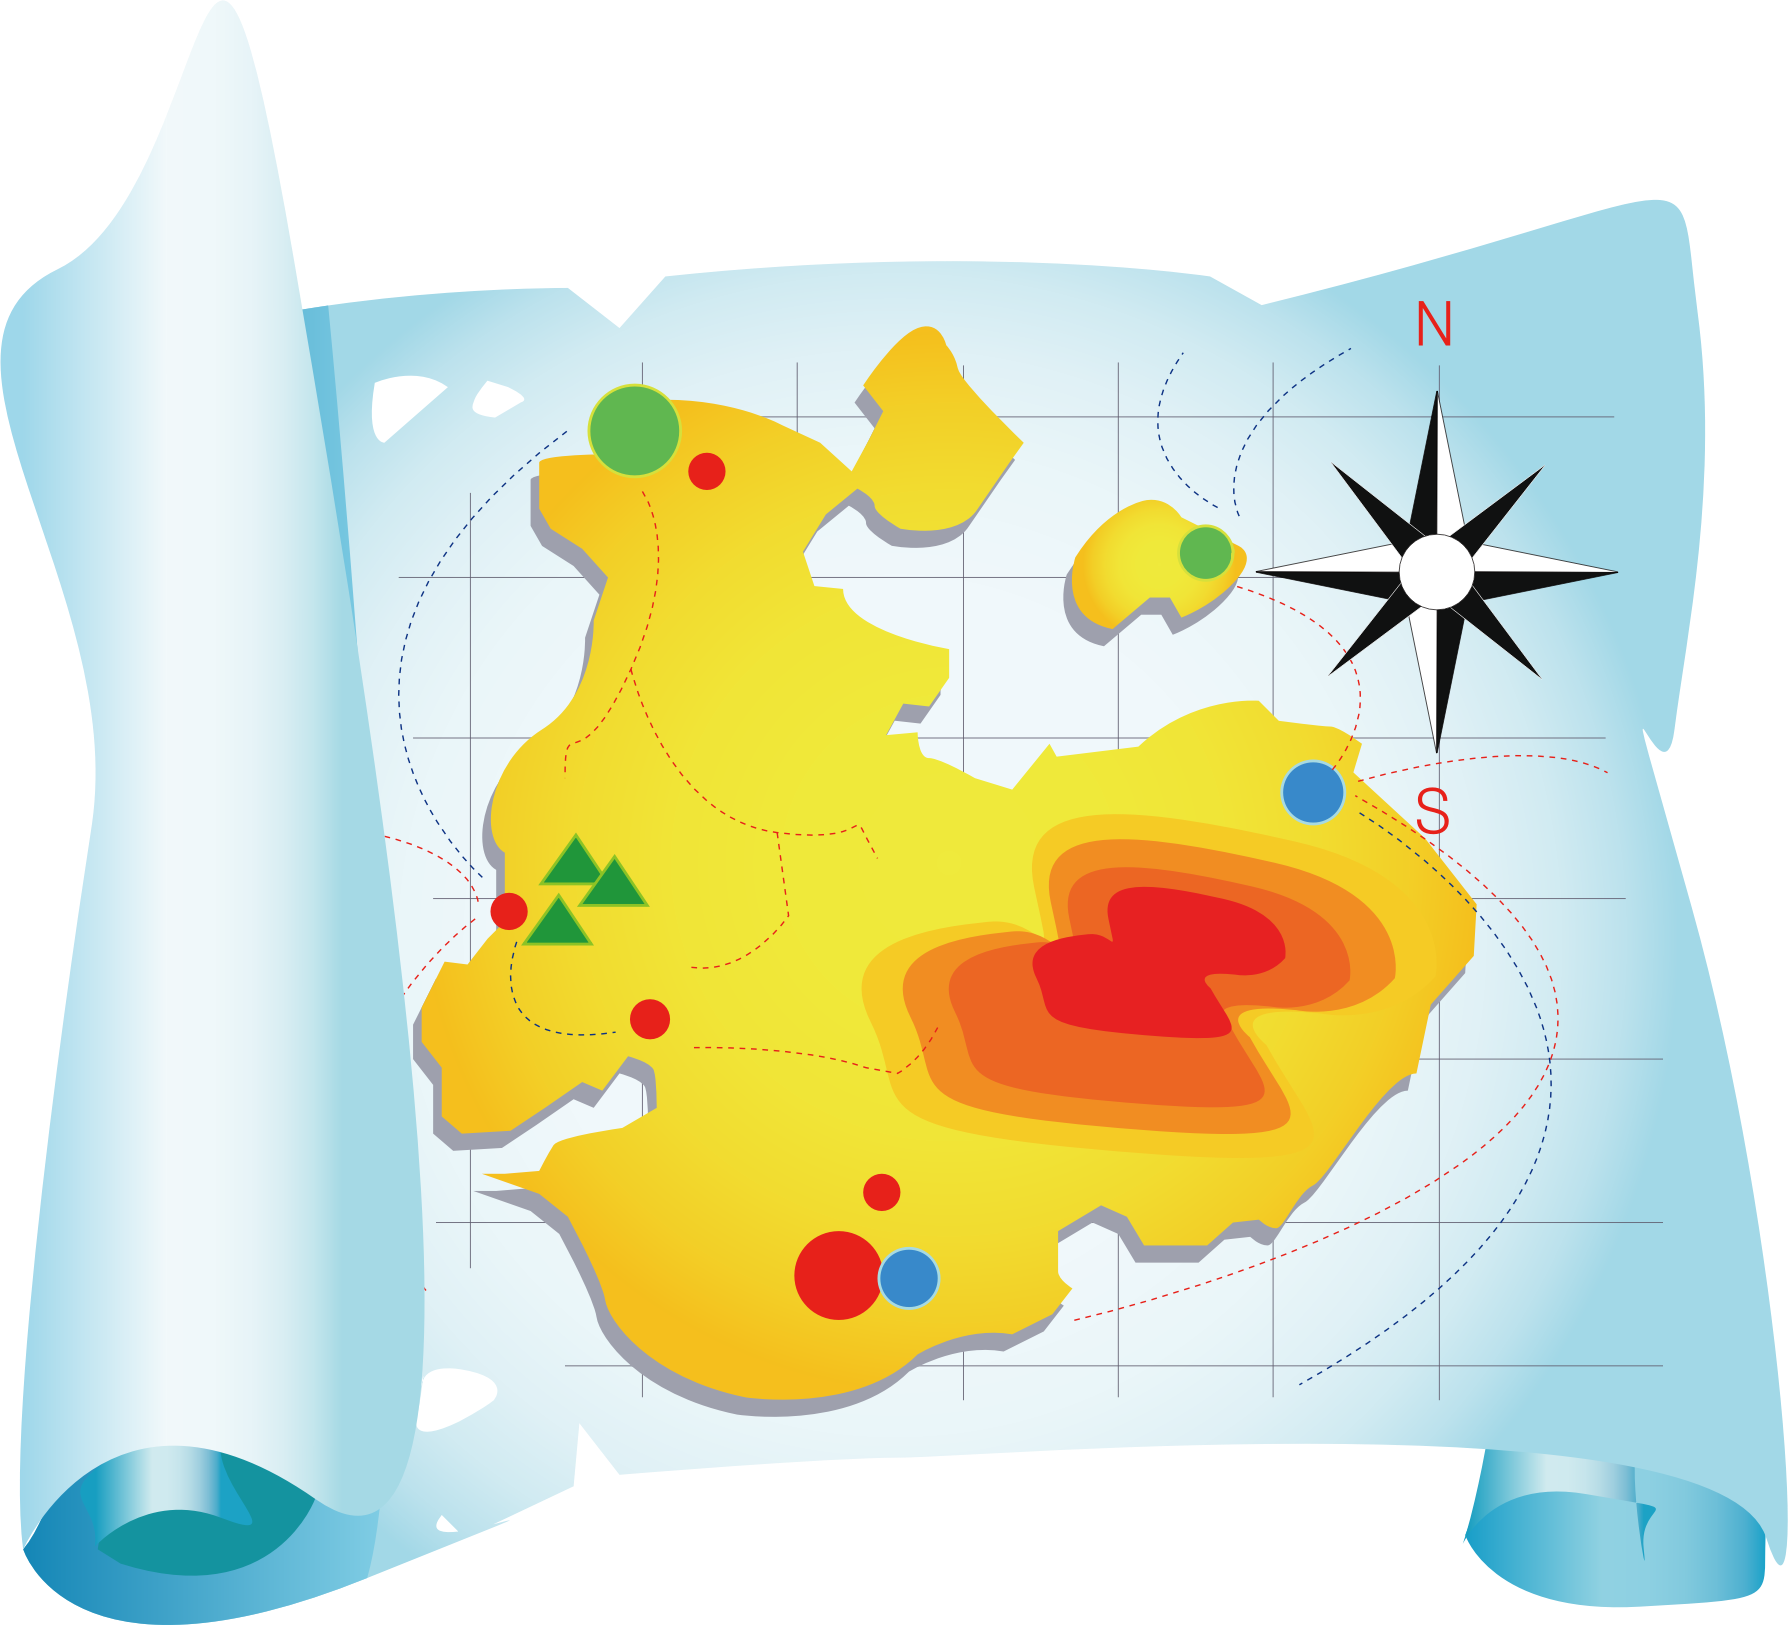 Карта картинка пнг. Карта мультяшная. Карта путешествия для детей. Географическая карта на прозрачном фоне. Карта рисунок.